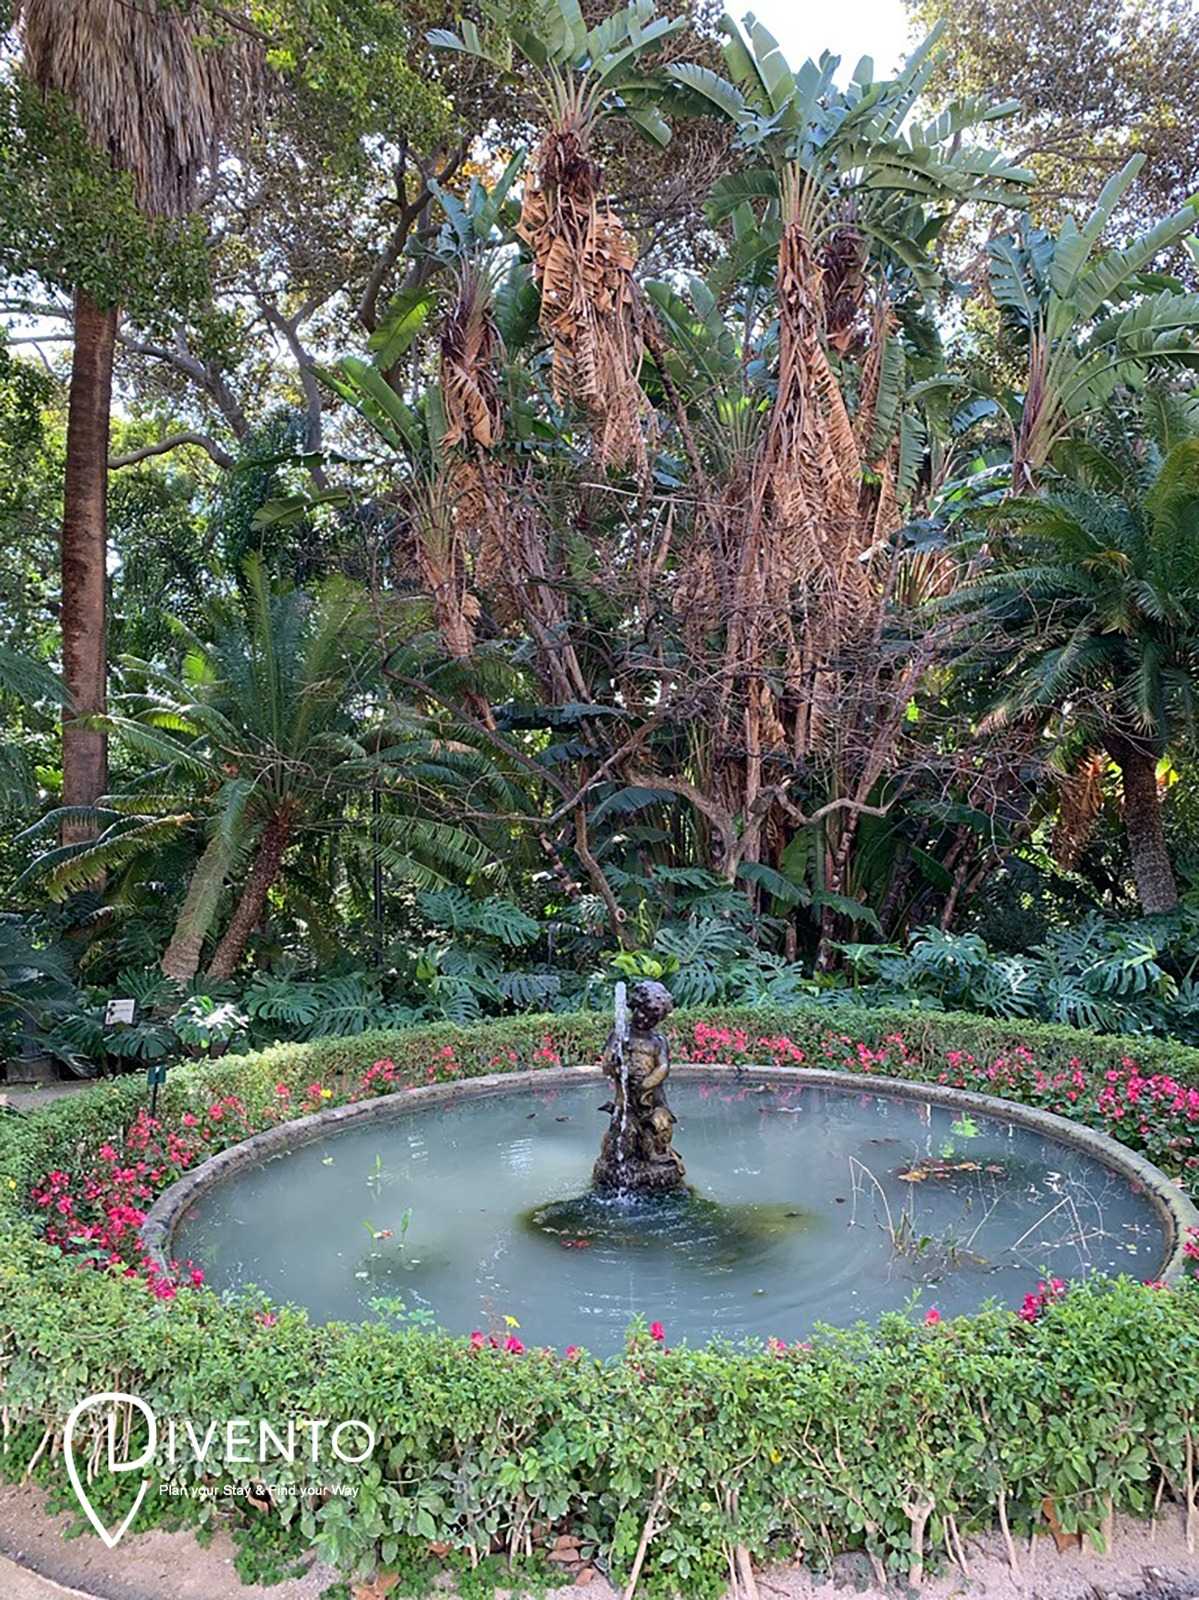 Botanical Garden La Concepcion, Malaga: All Year